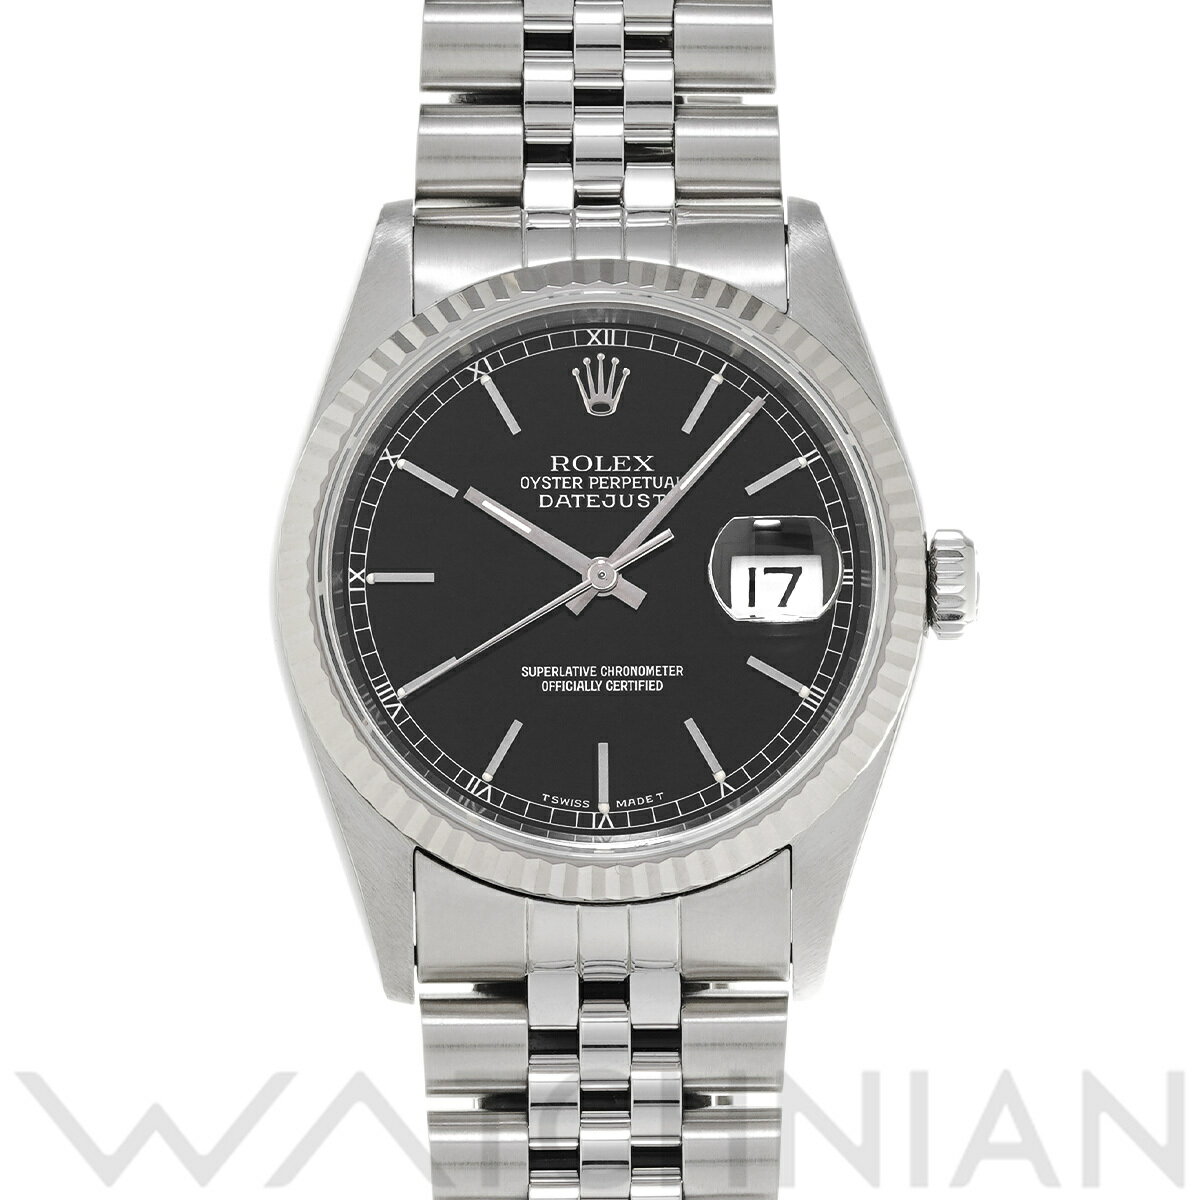 【ローン60回払い無金利】【中古】 ロレックス ROLEX デイトジャスト 16234 S番(1993年頃製造) ブラック メンズ 腕時計 ロレックス 時計 高級腕時計 ブランド